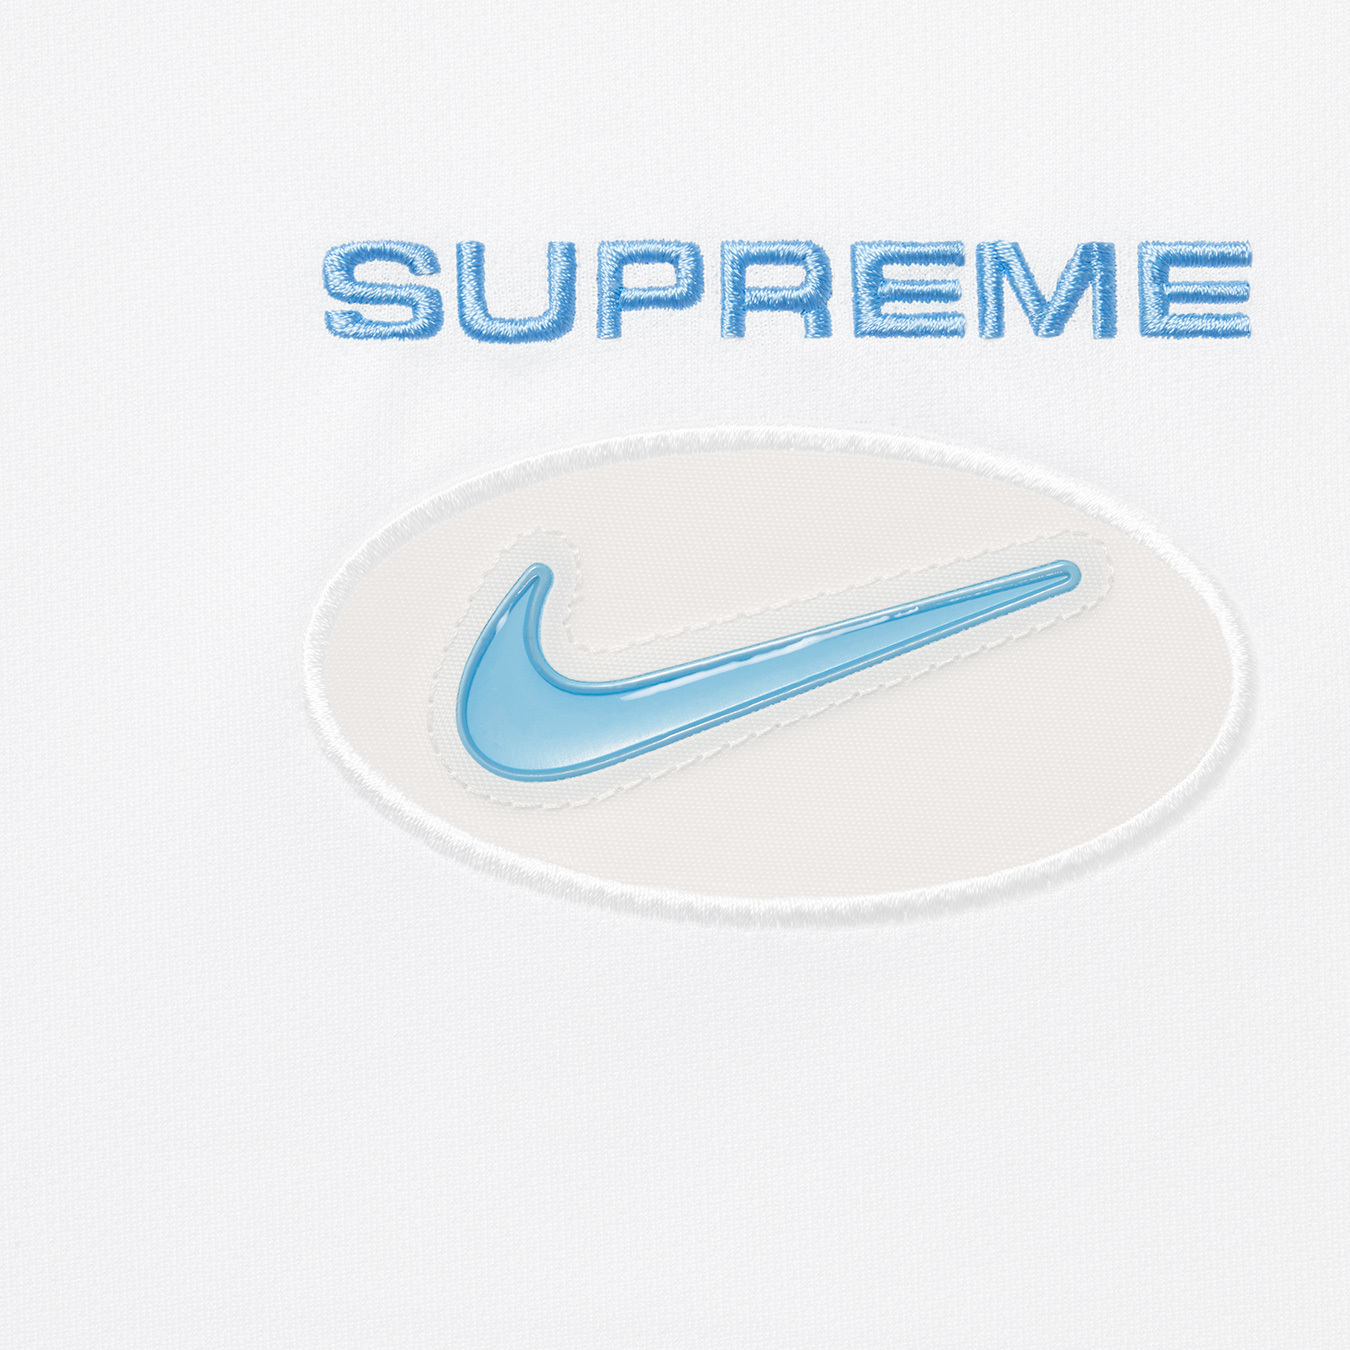 Supreme®/Nike® Jewel Stripe Soccer Jersey